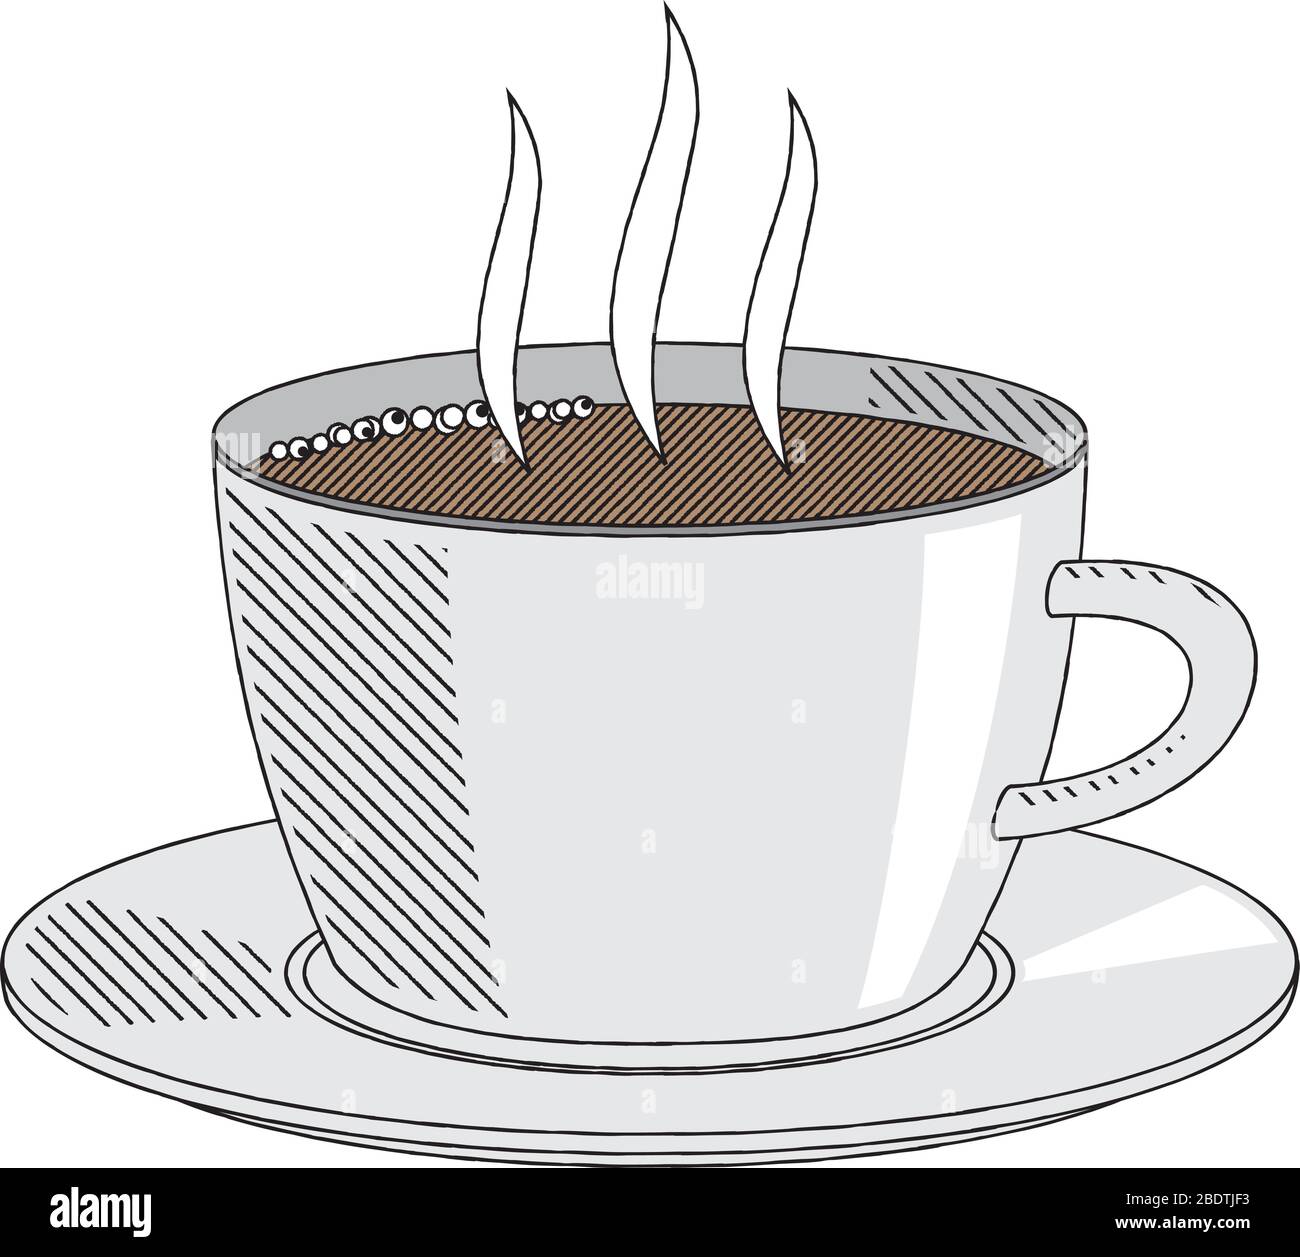 Tasse à café/tasse à thé - illustration/ clipart Image Vectorielle Stock -  Alamy